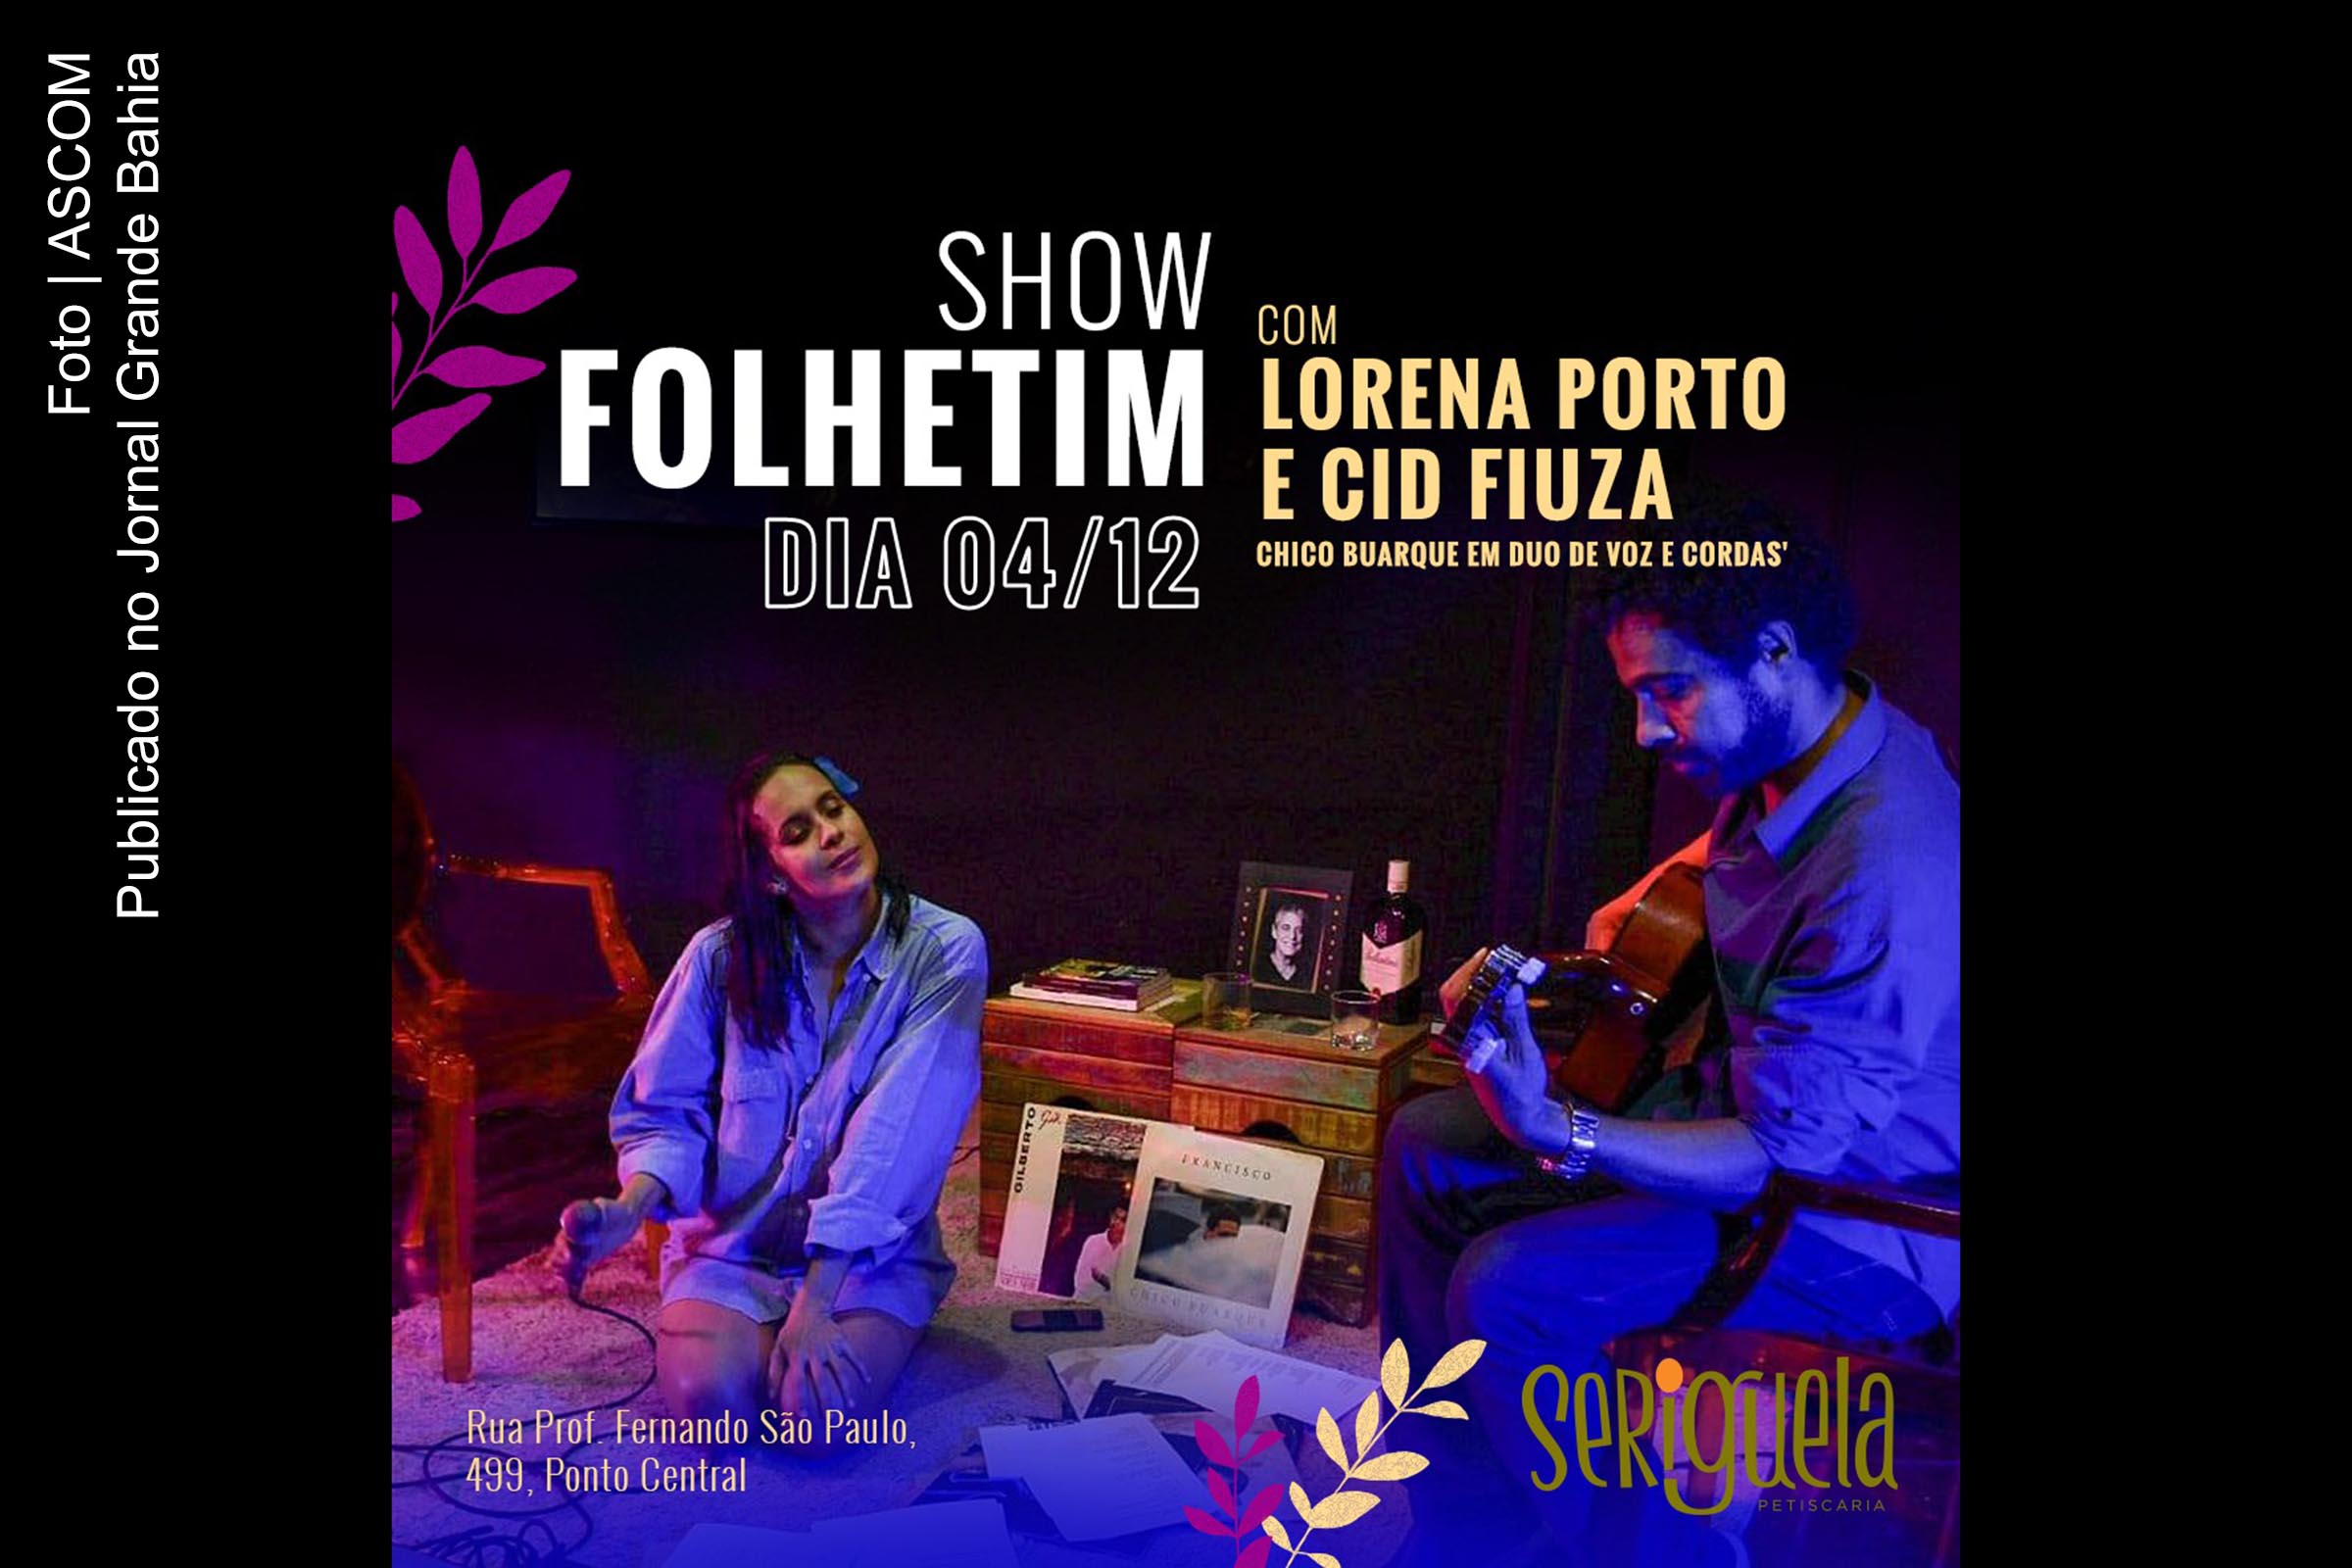 Carta anuncia Lorena Porto e Cid Fiuza em show 'Folhetim - Chico Buarque em duo de voz e cordas'.